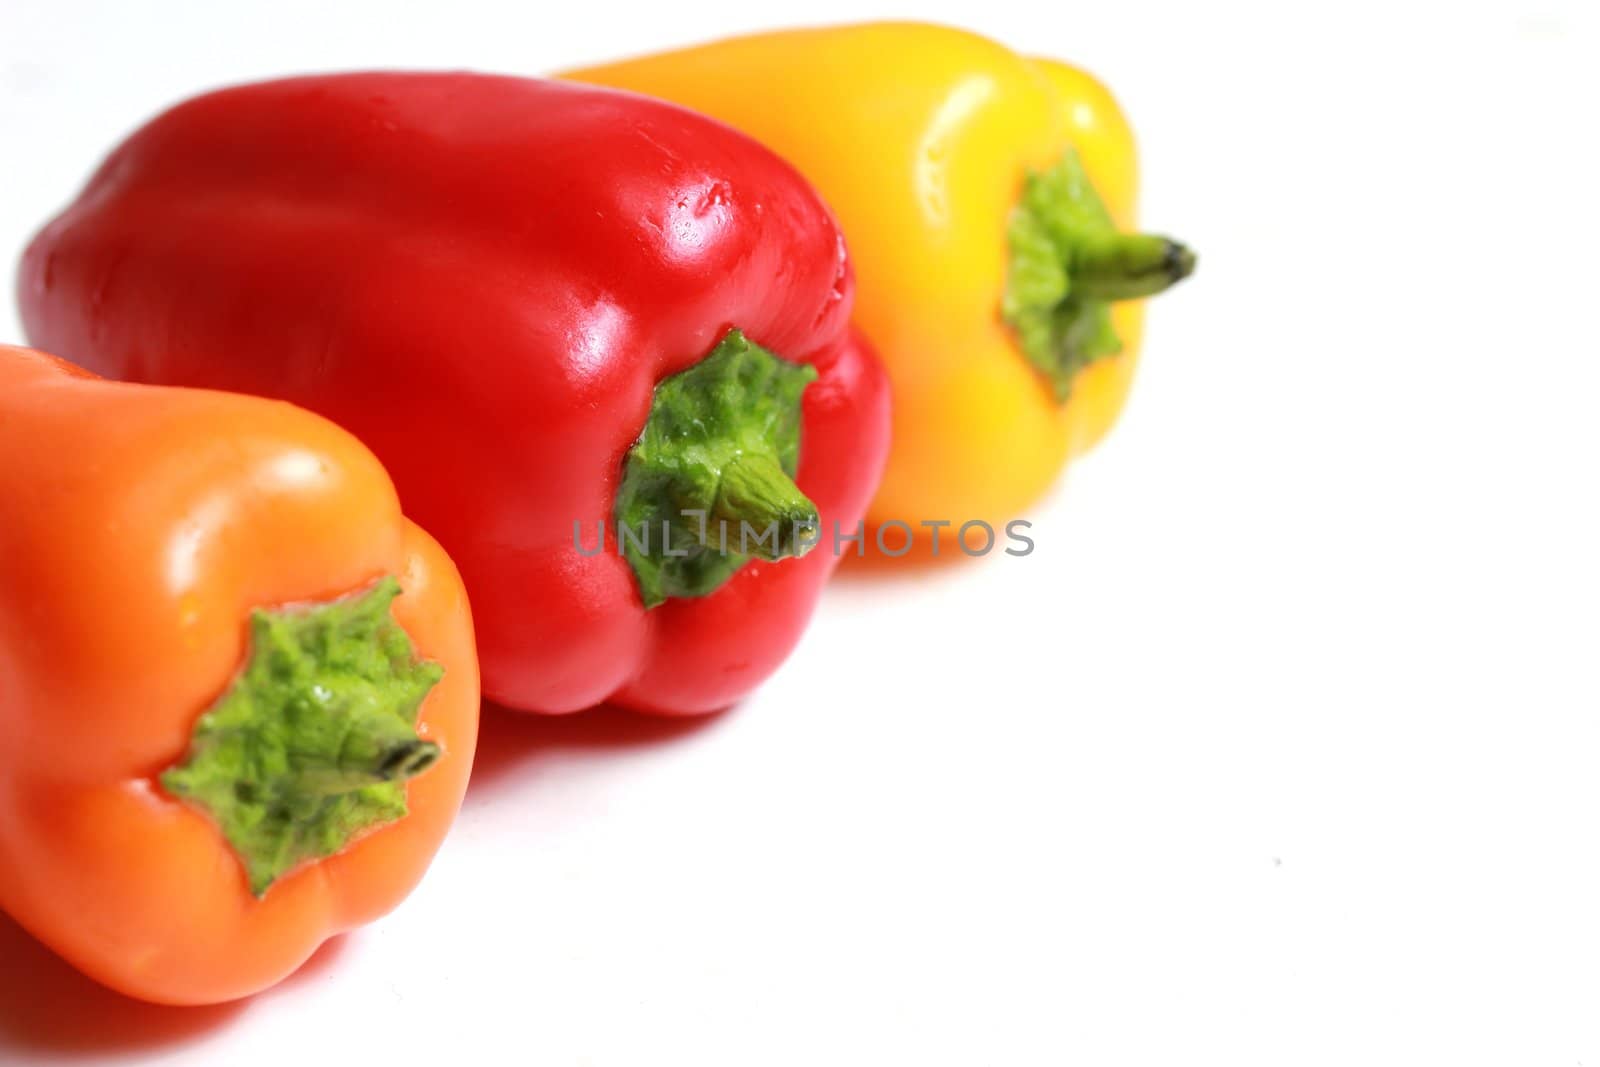 colorful mini paprika